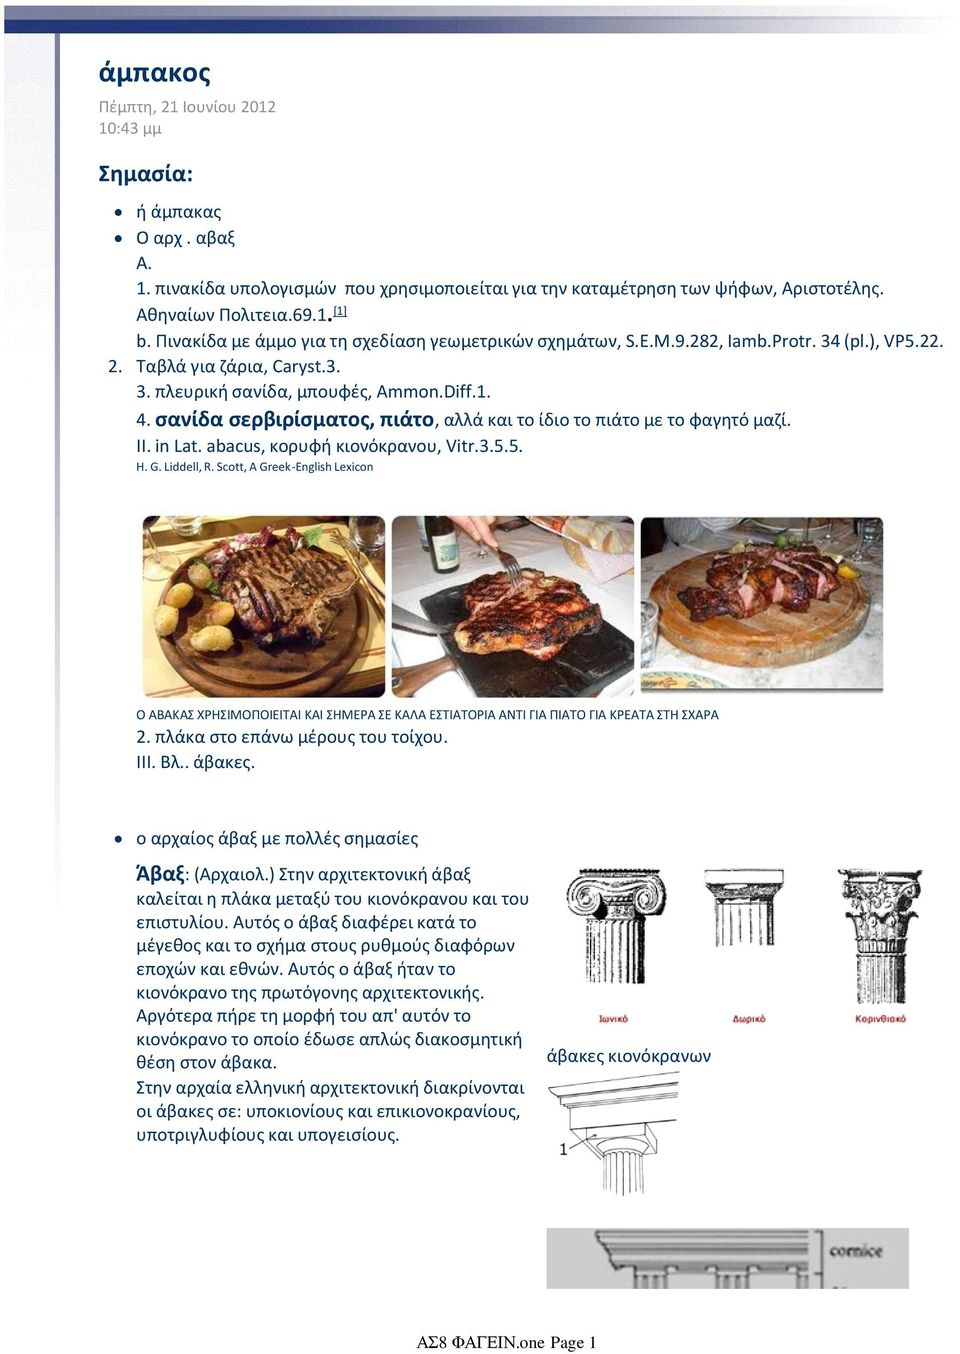 σανίδα σερβιρίσματος, πιάτο, αλλά και το ίδιο το πιάτο με το φαγητό μαζί. II. in Lat. abacus, κορυφή κιονόκρανου, Vitr.3.5.5. H. G. Liddell, R.